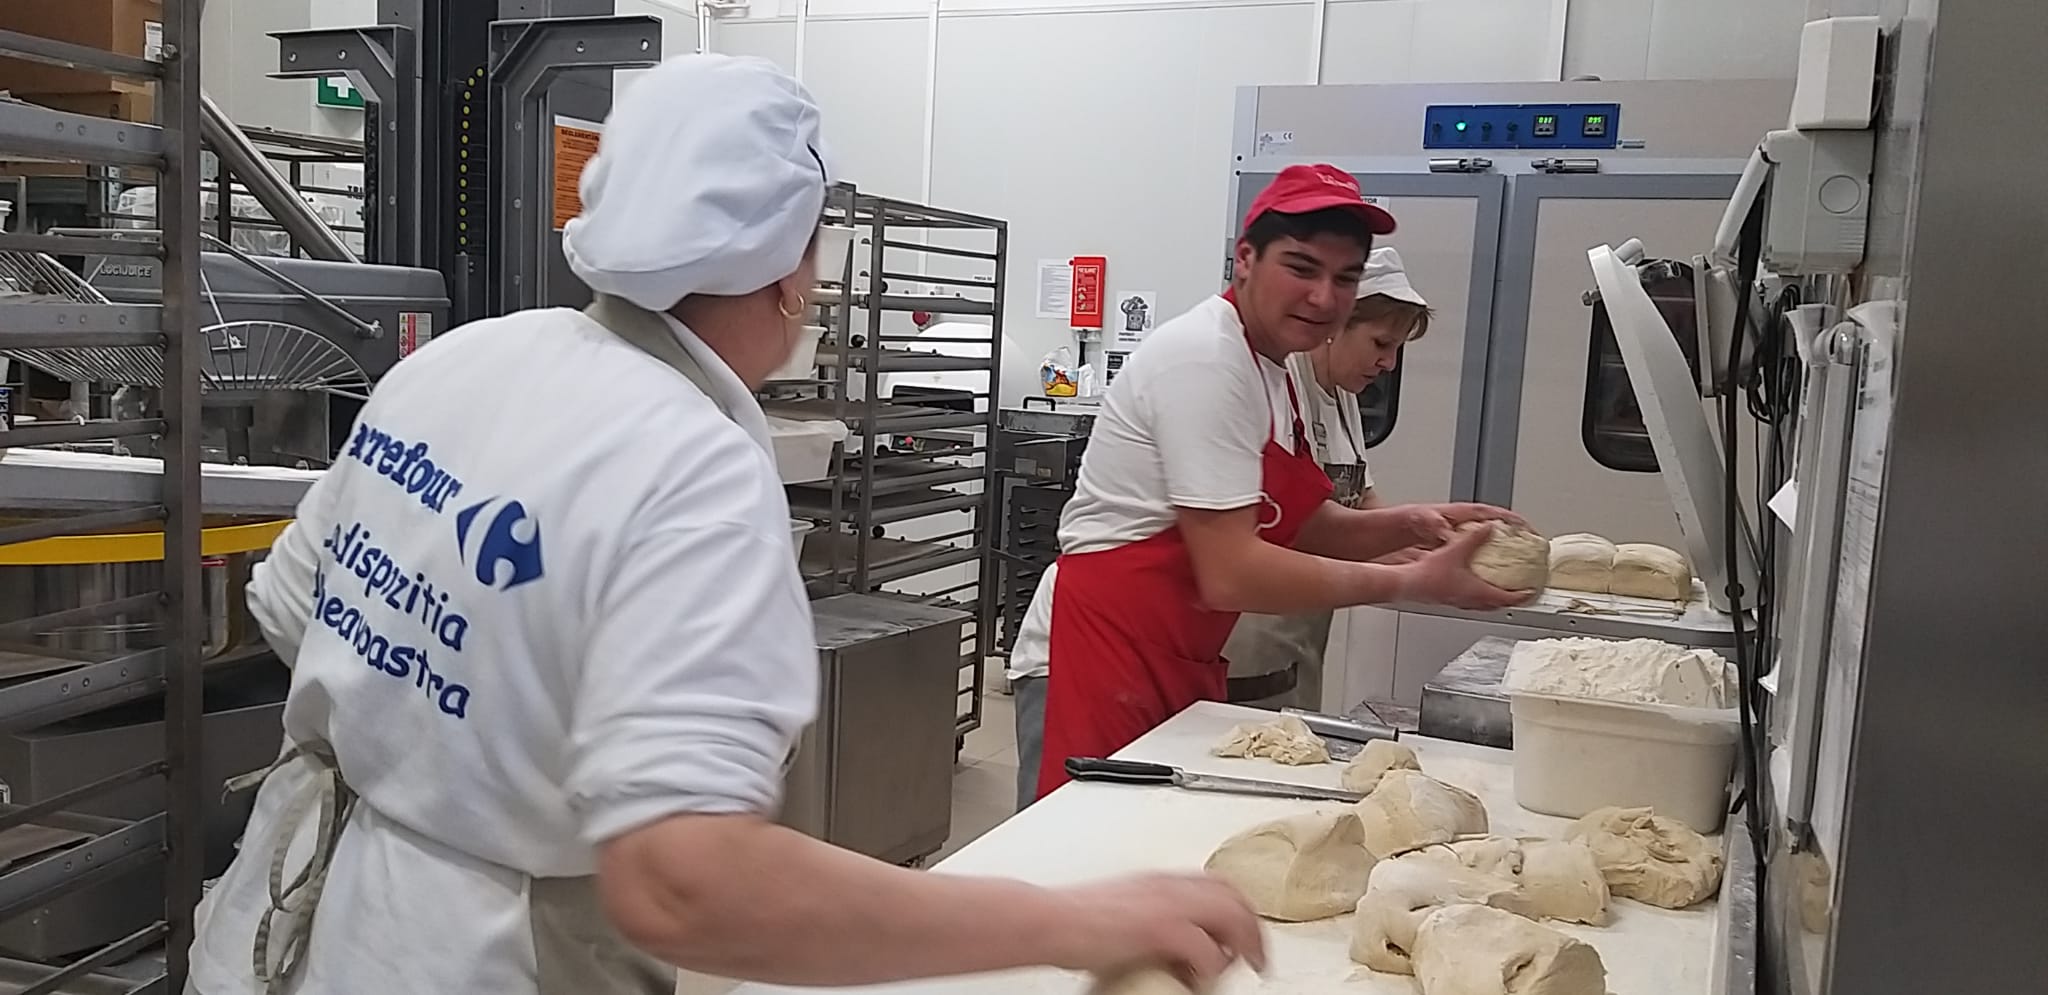 Elevii Bakery School au început practica la Carrefour România: Ce învață și ce oportunități au